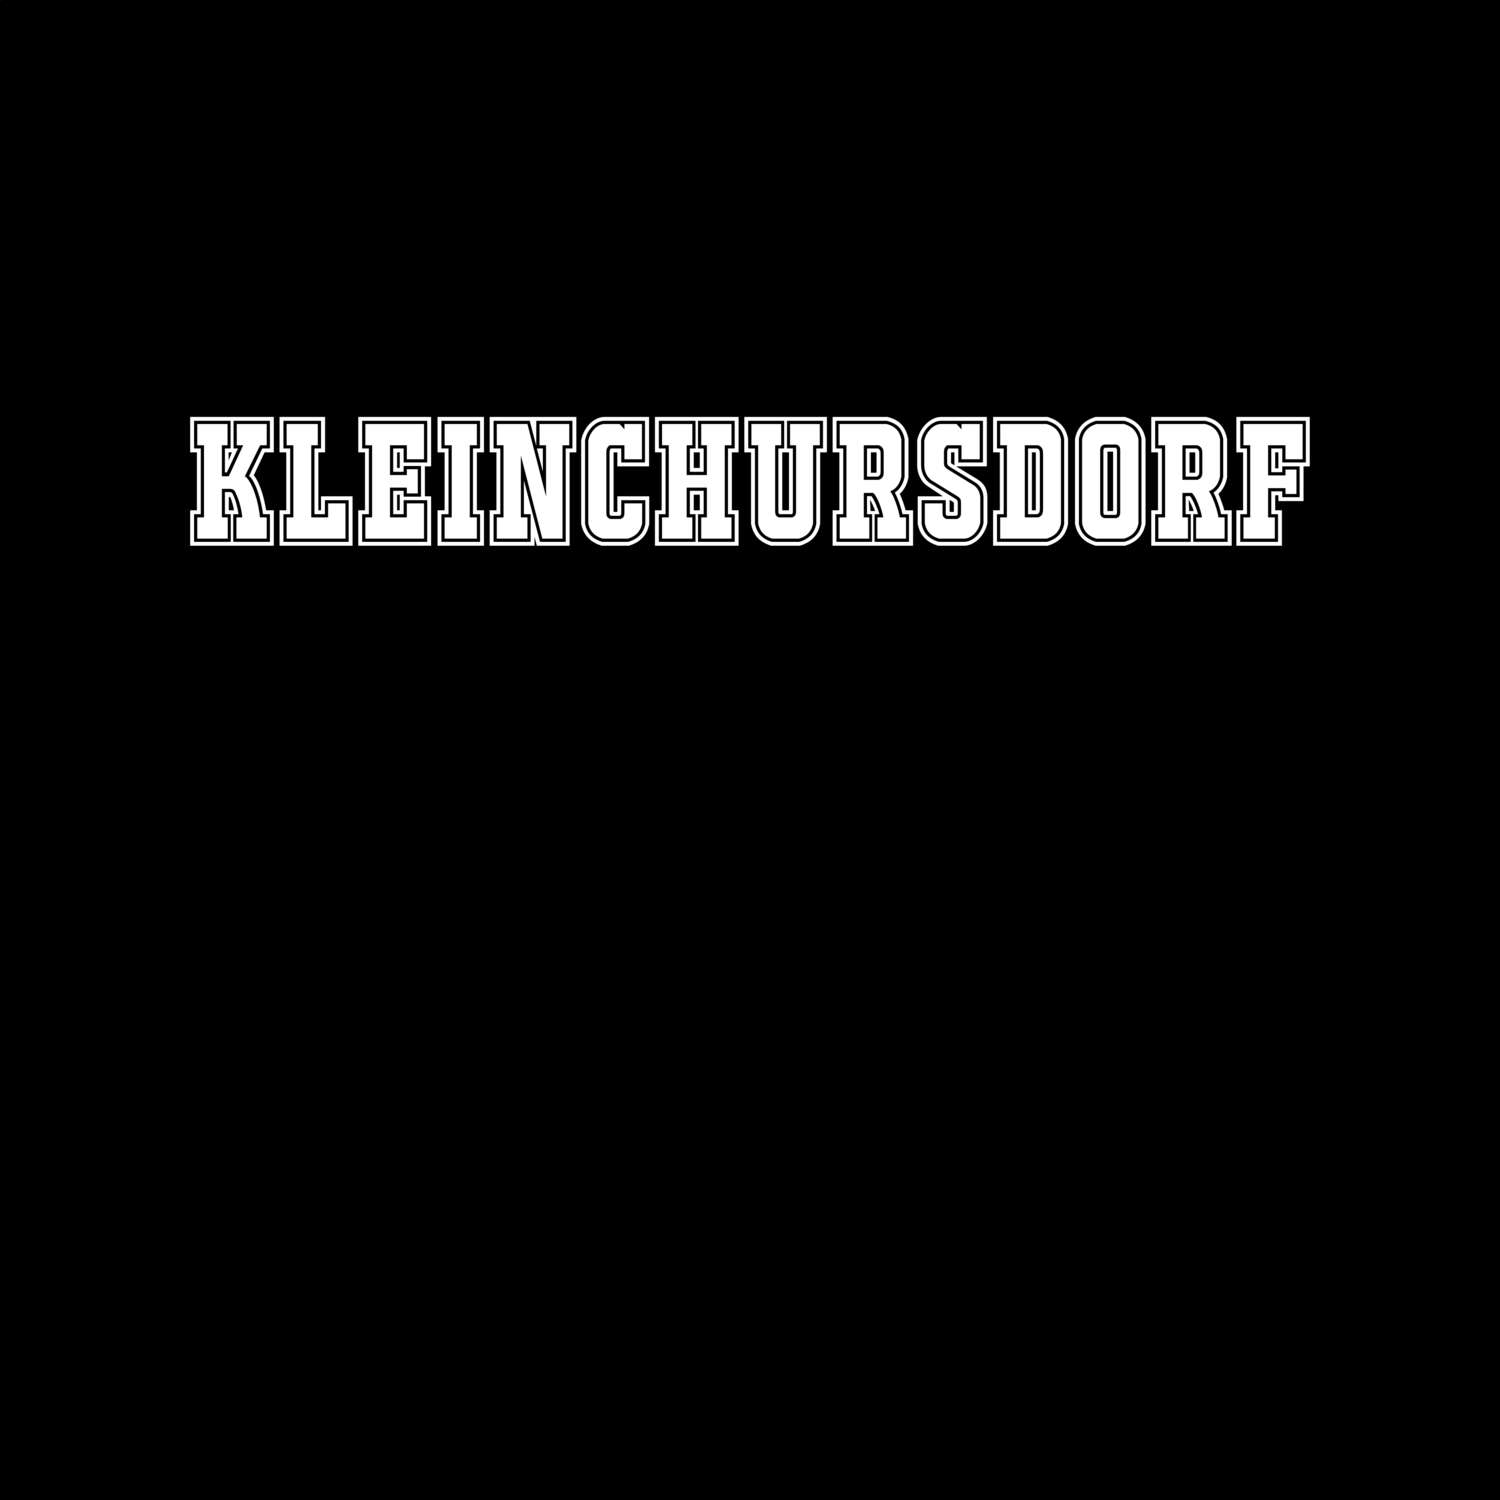 Kleinchursdorf T-Shirt »Classic«